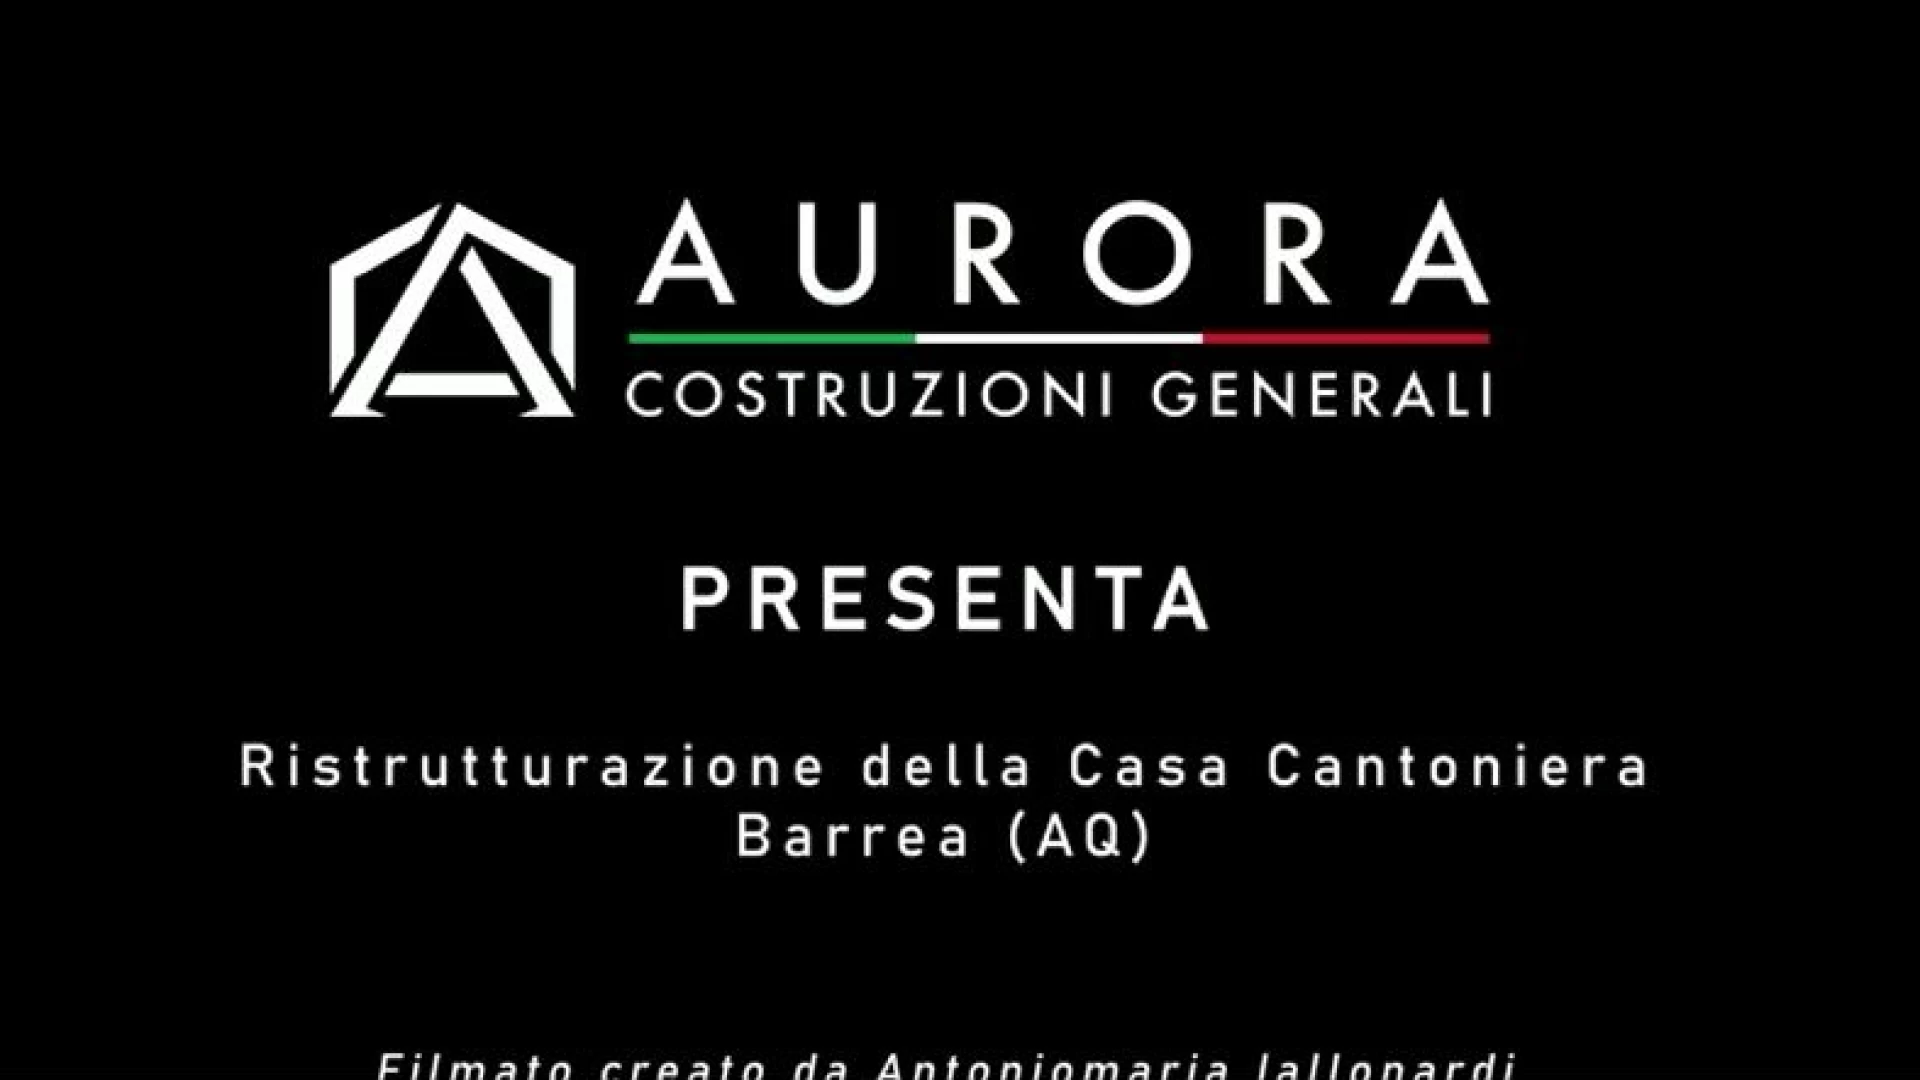 Castel Di Sangro: affidati ad Aurora Costruzioni Generali per le tue ristrutturazioni. Guarda il promo